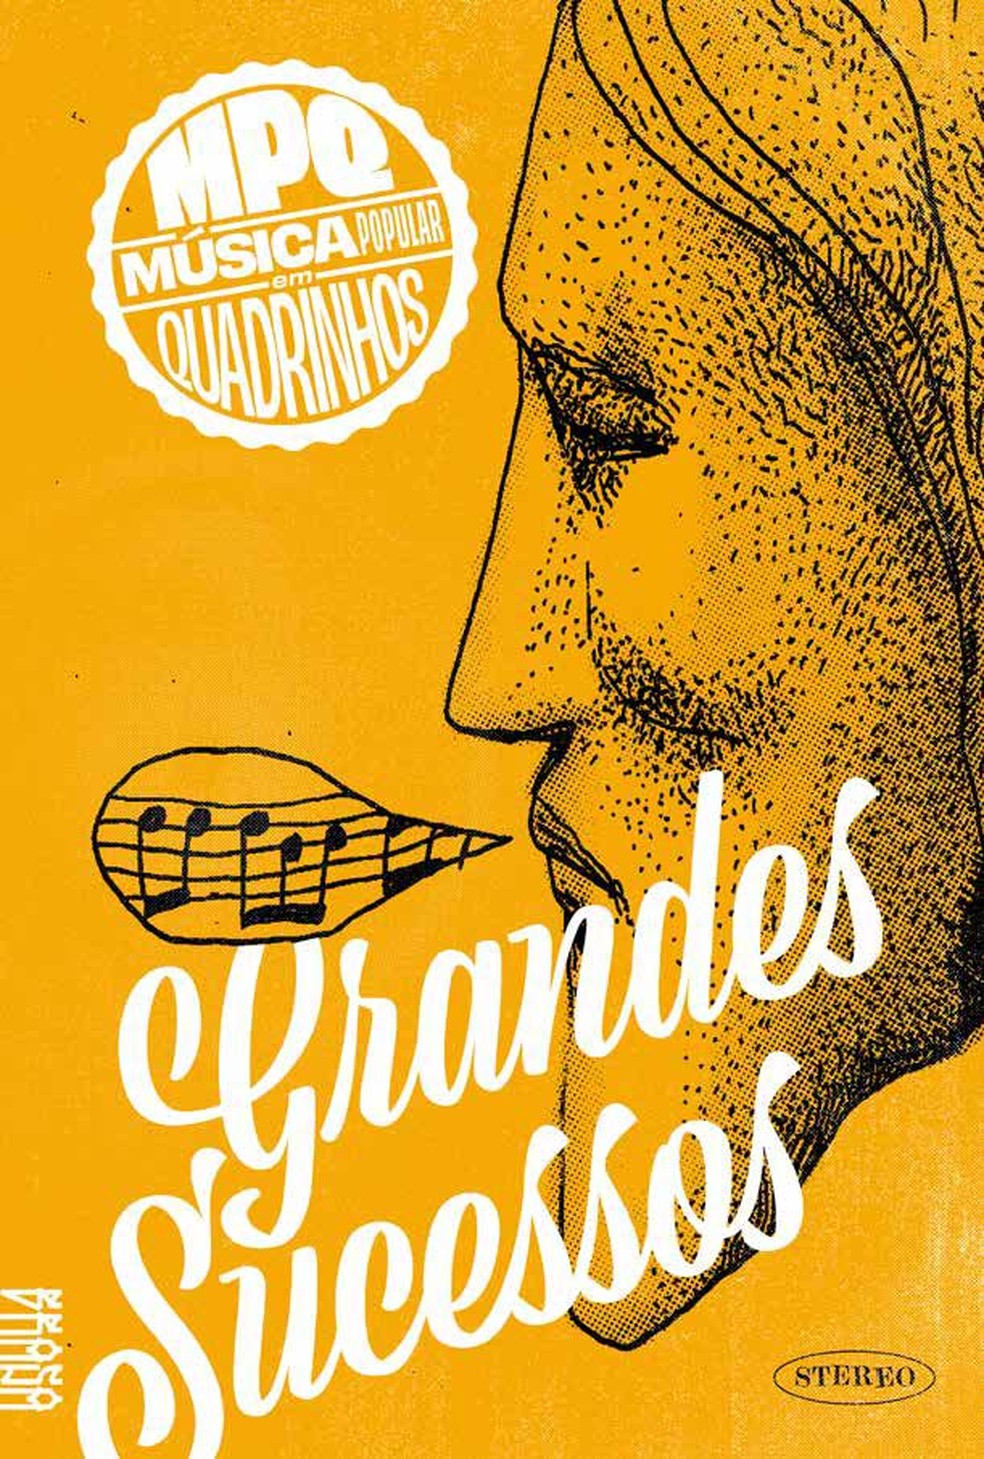 Capa do livro 'Grandes sucessos: música popular em quadrinhos' — Foto: Divulgação